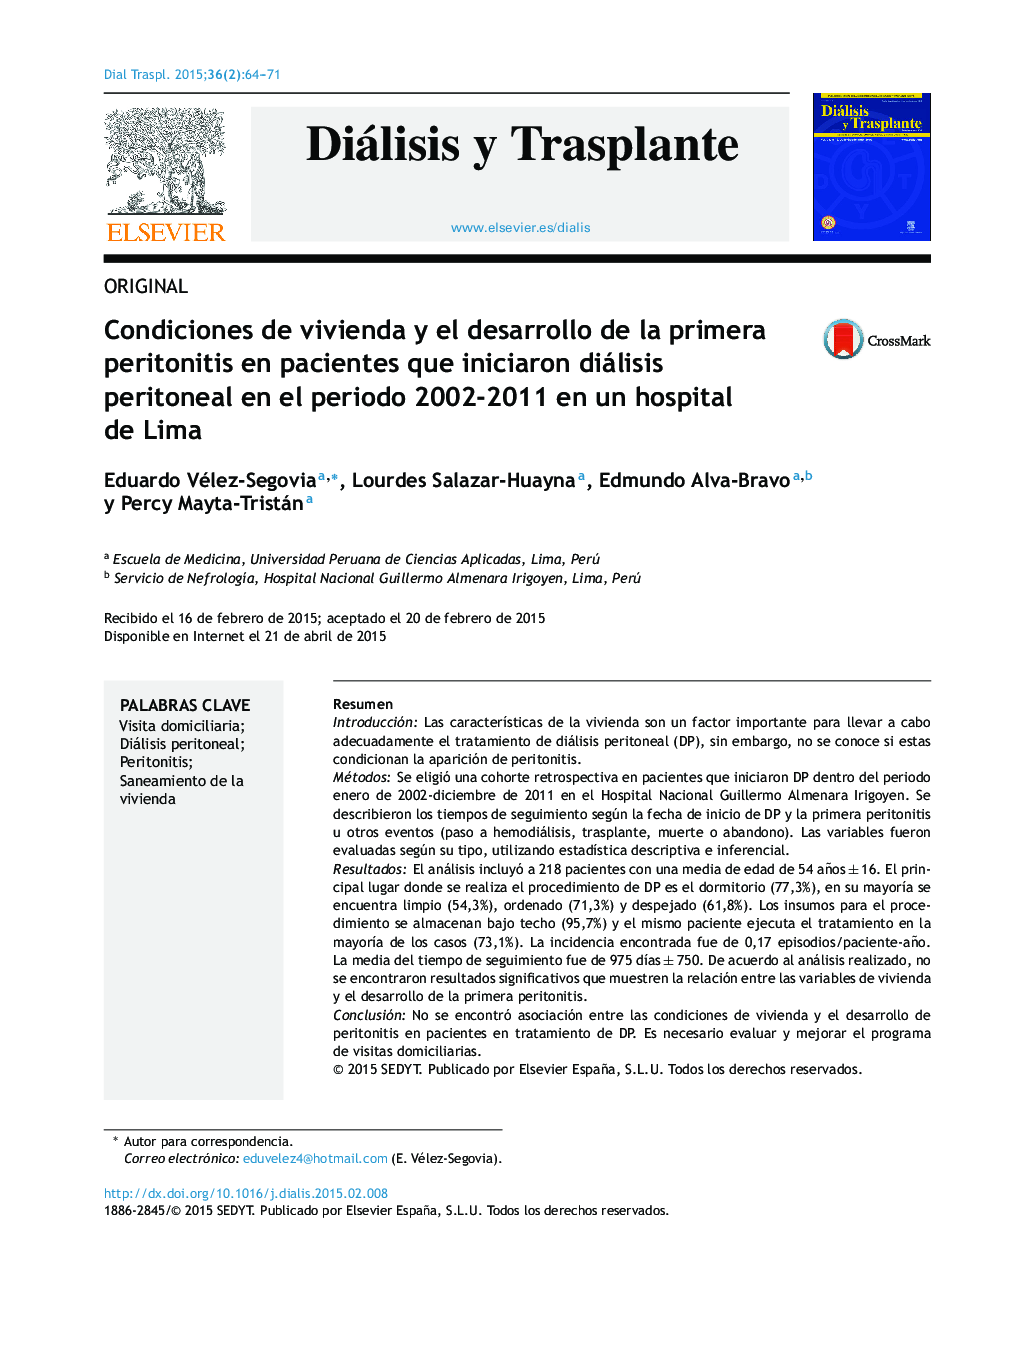 شرایط مسکن و توسعه پریتونیت اول در بیمارانی که دیالیز صفاقی را در دوره زمانی 2002-2011 در بیمارستان لیما آغاز کردند 